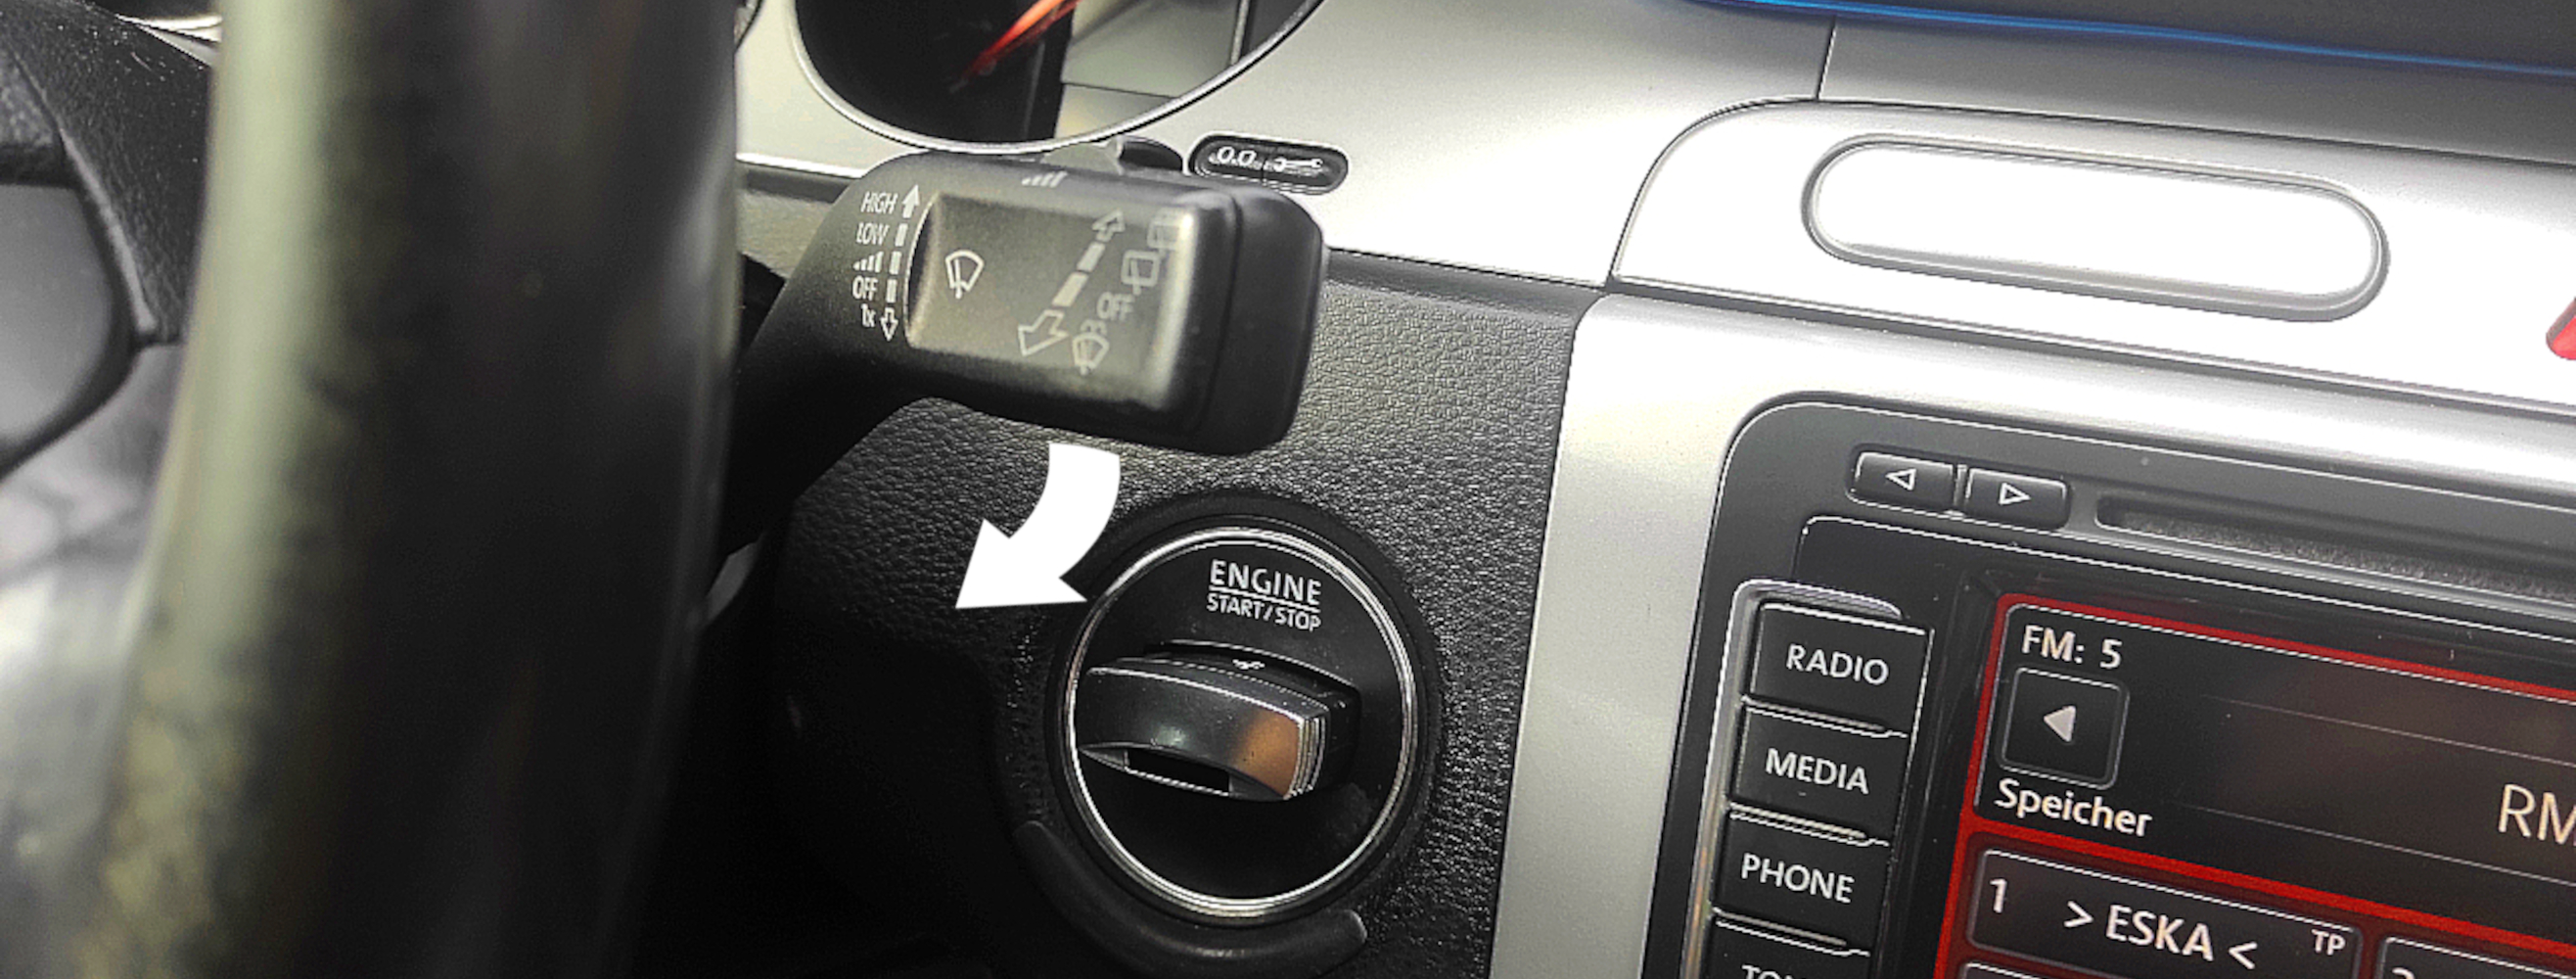 Przełącznik położenia wycieraczek w VW Passat.